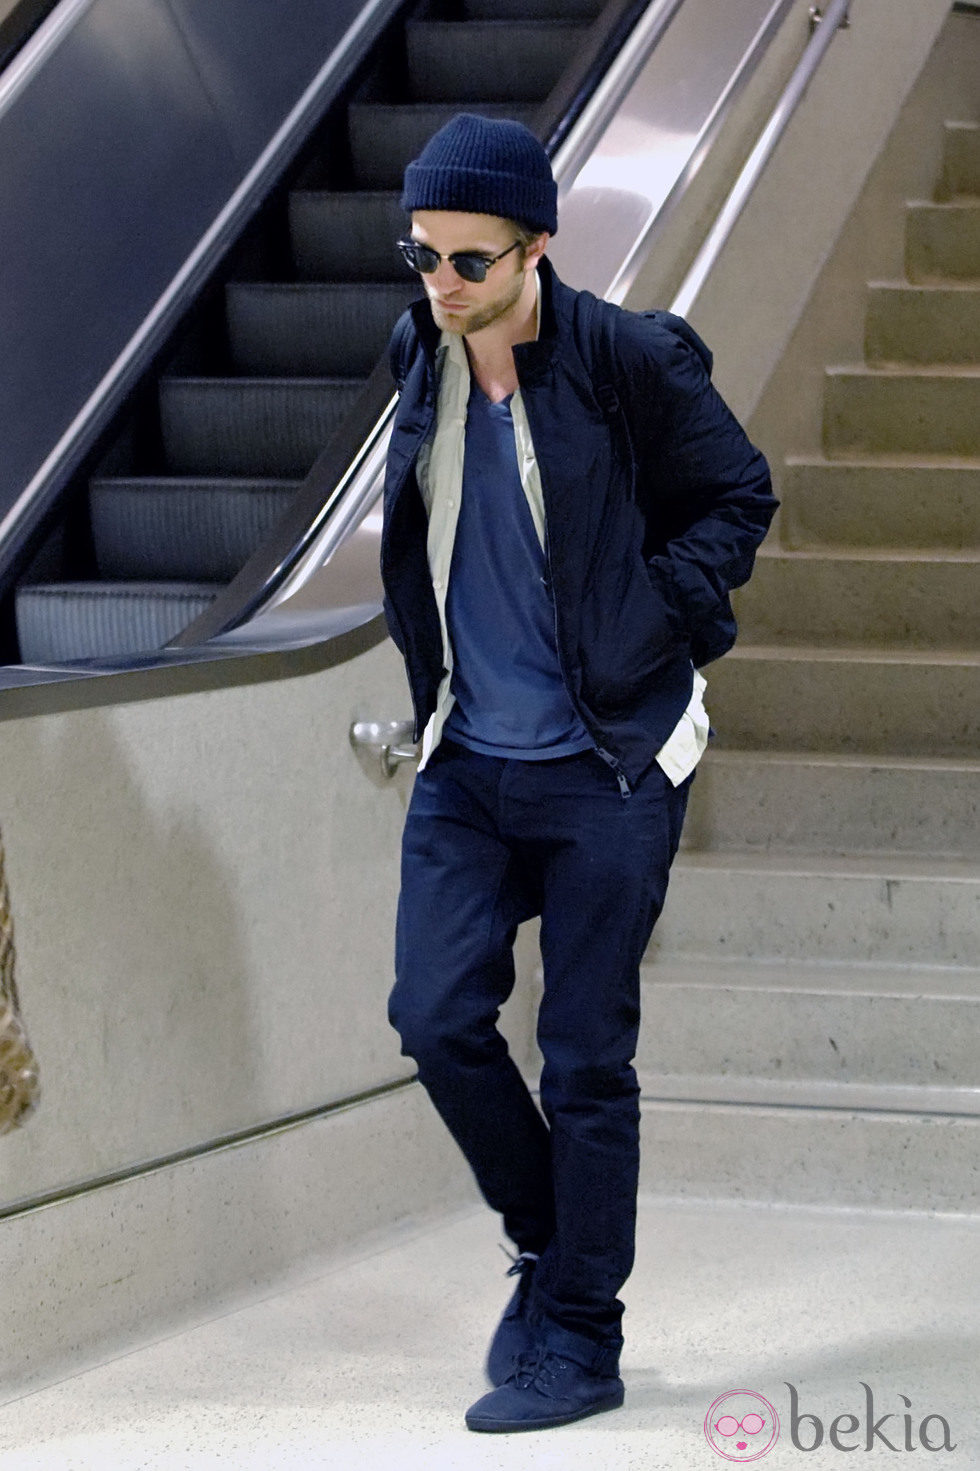 Robert Pattinson con un look invernal en tonalidades azules a juego con su gorro azul